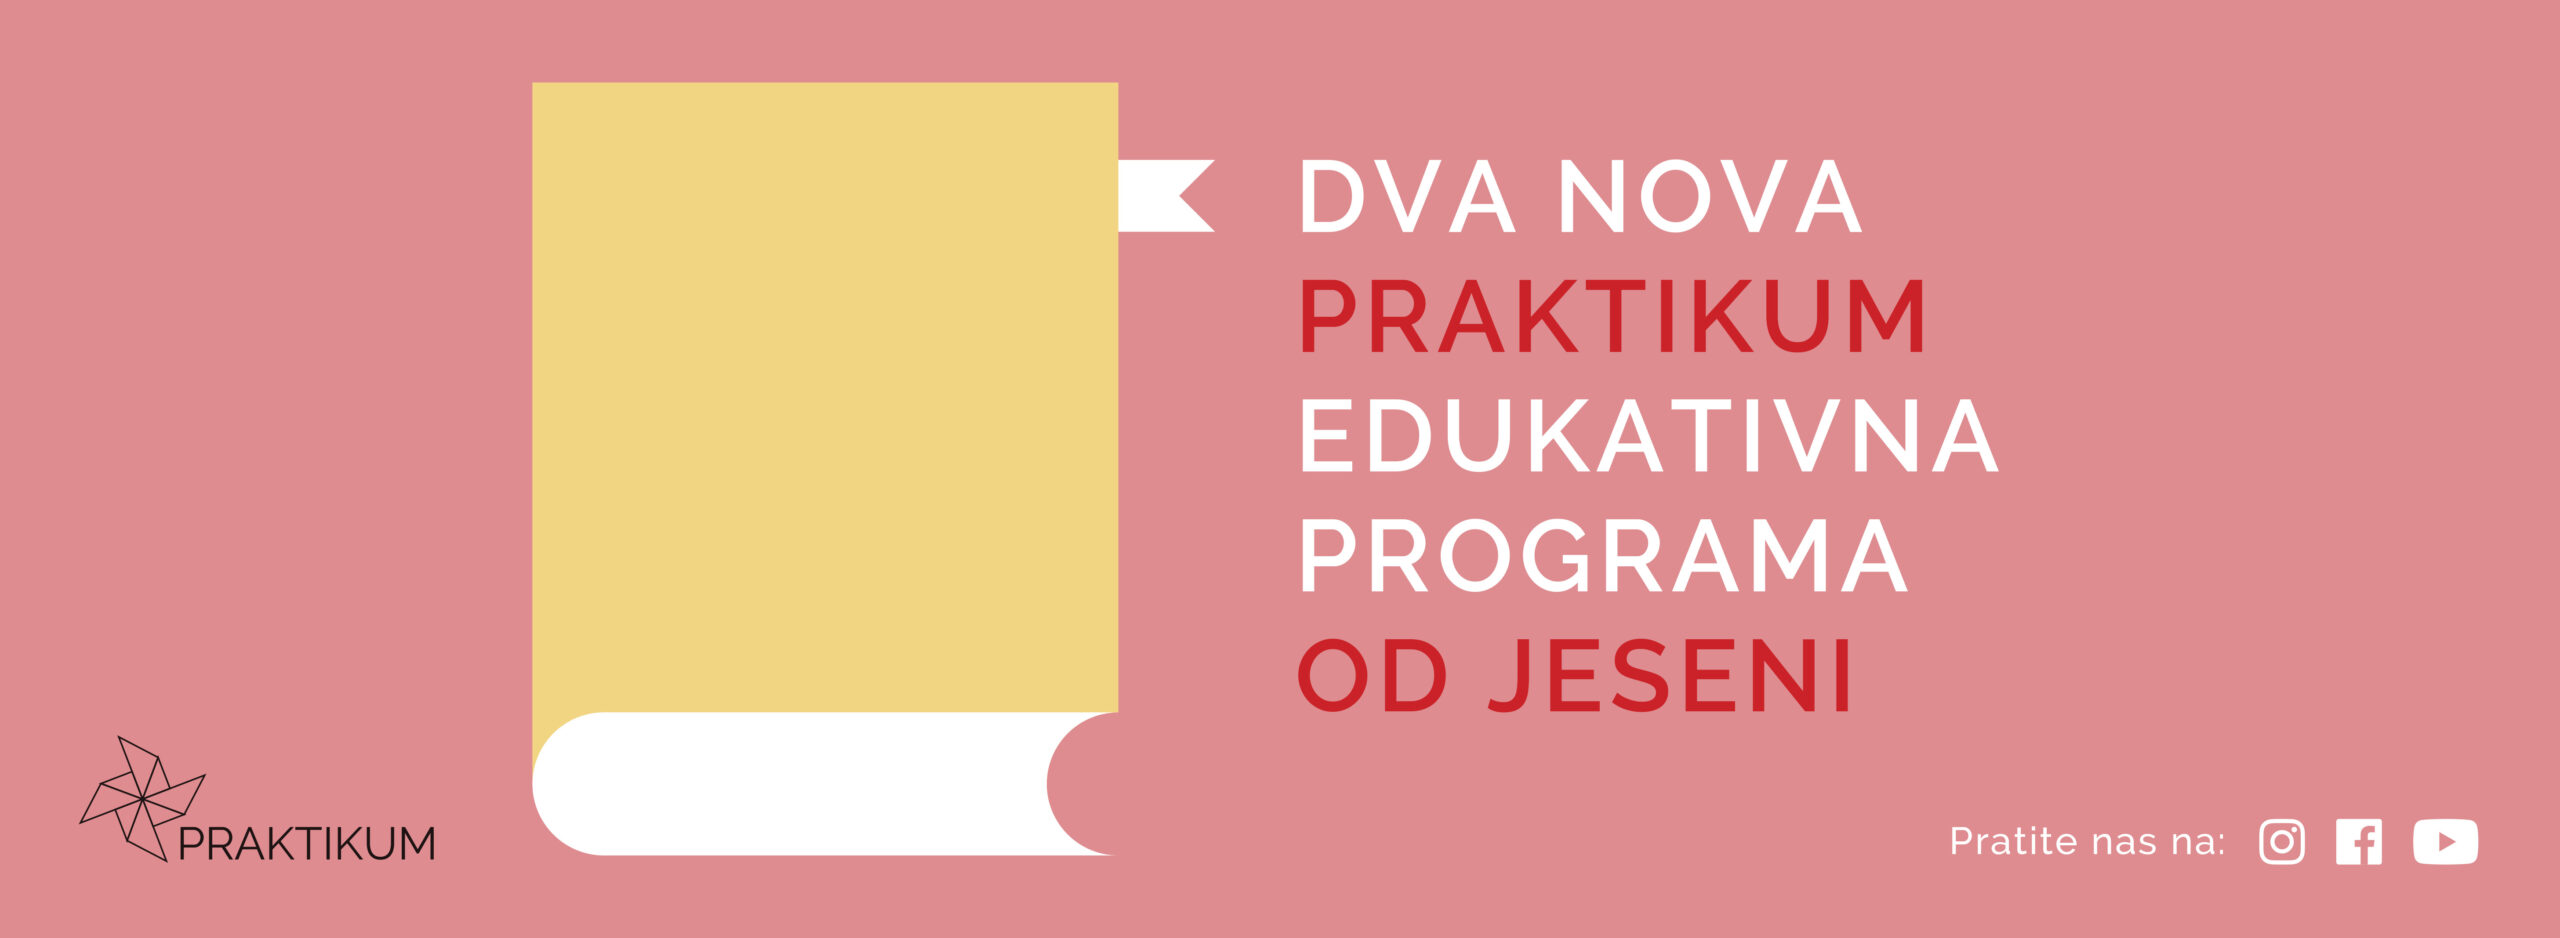 Praktikum Samostalno učenje i Praktikum Boravak, dva nova edukativna programa Praktikum Zagreb